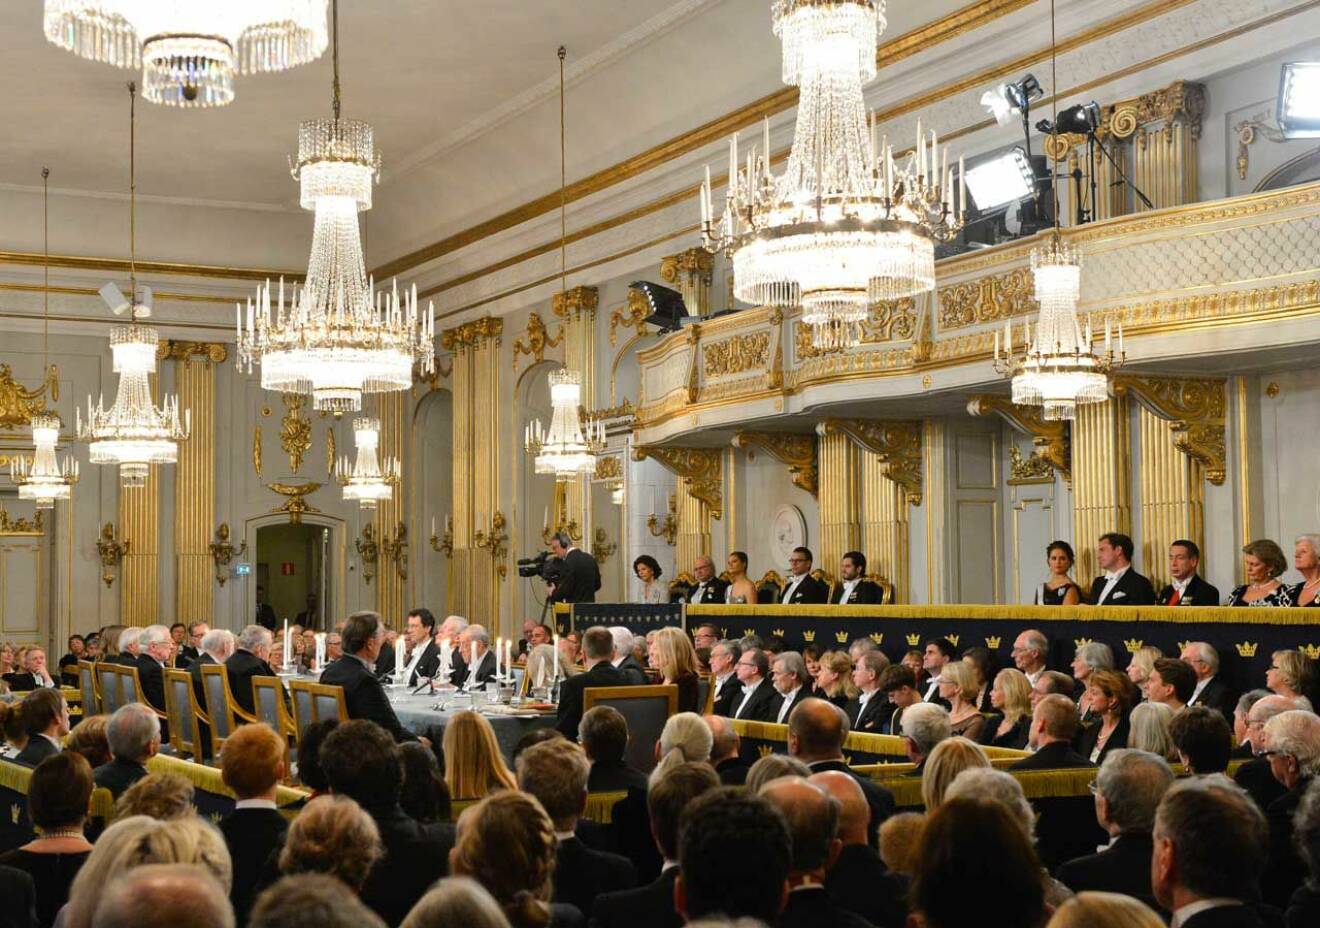 Våra bedömare är eniga: Svenska Akademien förtjänar inte den legitimitet som det skulle ge om hela kungafamiljen närvarar vid högtidssammankomsten.